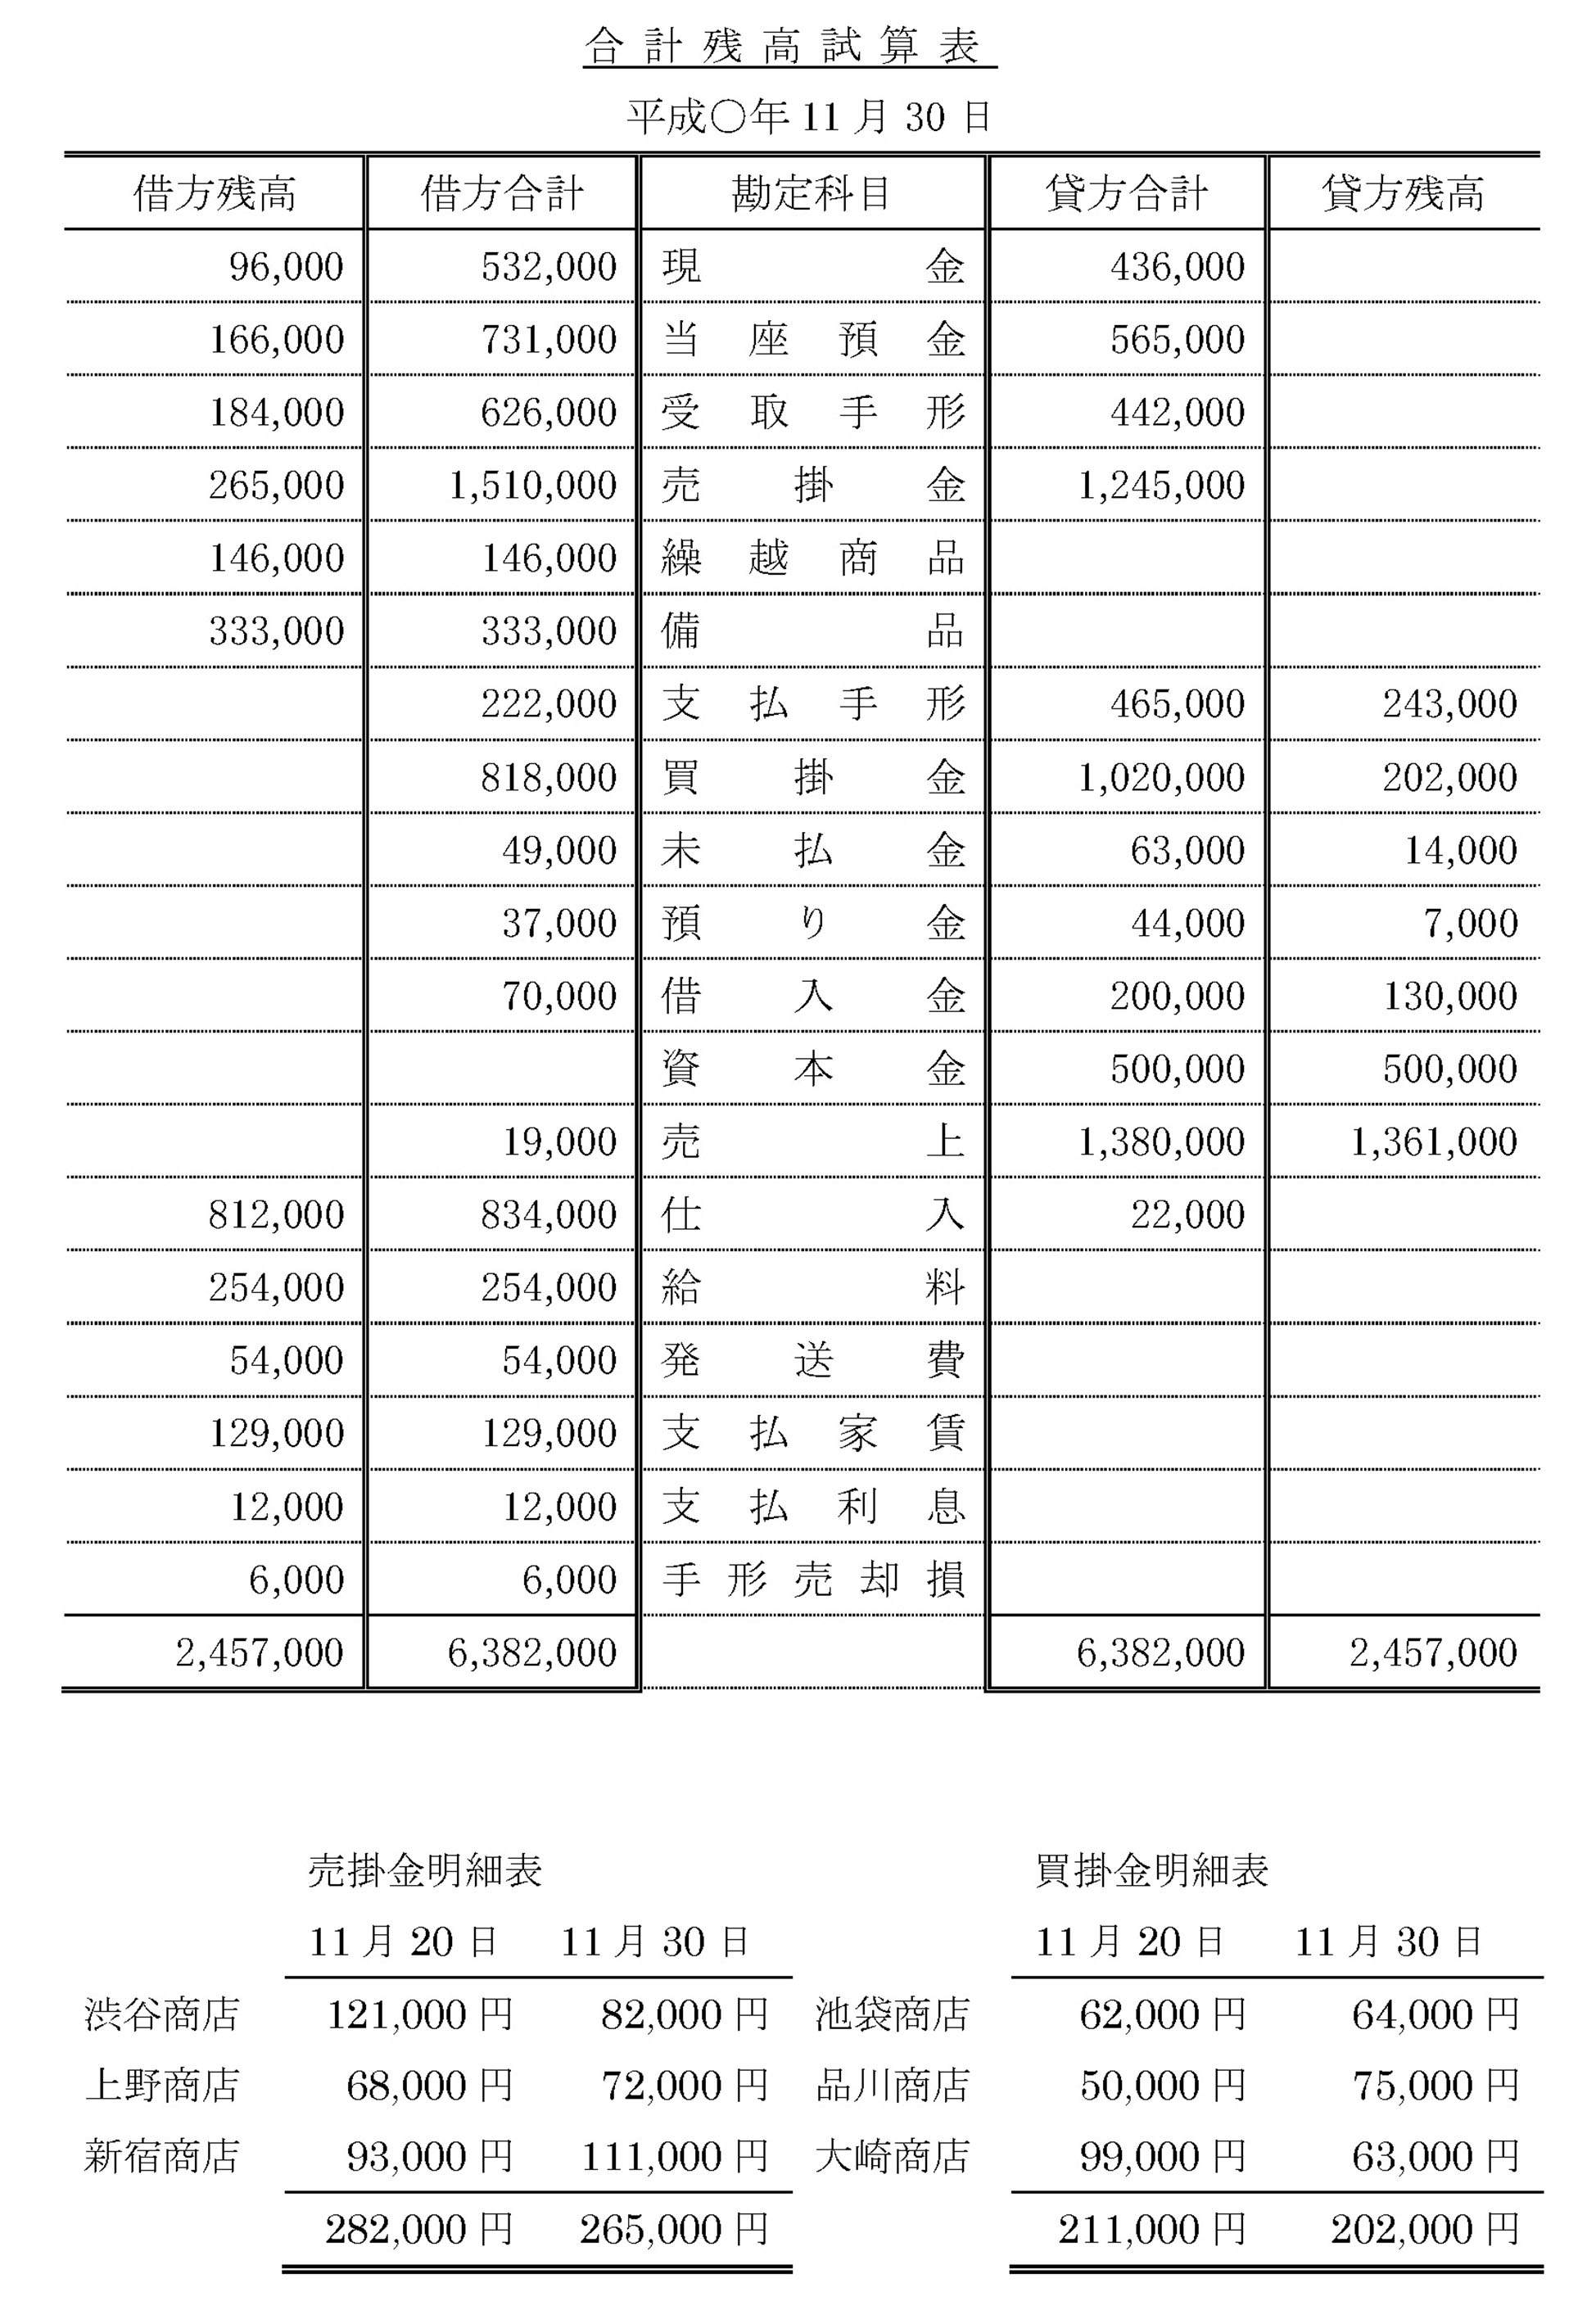 東京ビジネス 合計残高試算表 (建設・科目印刷・消費税無) 平成18年 